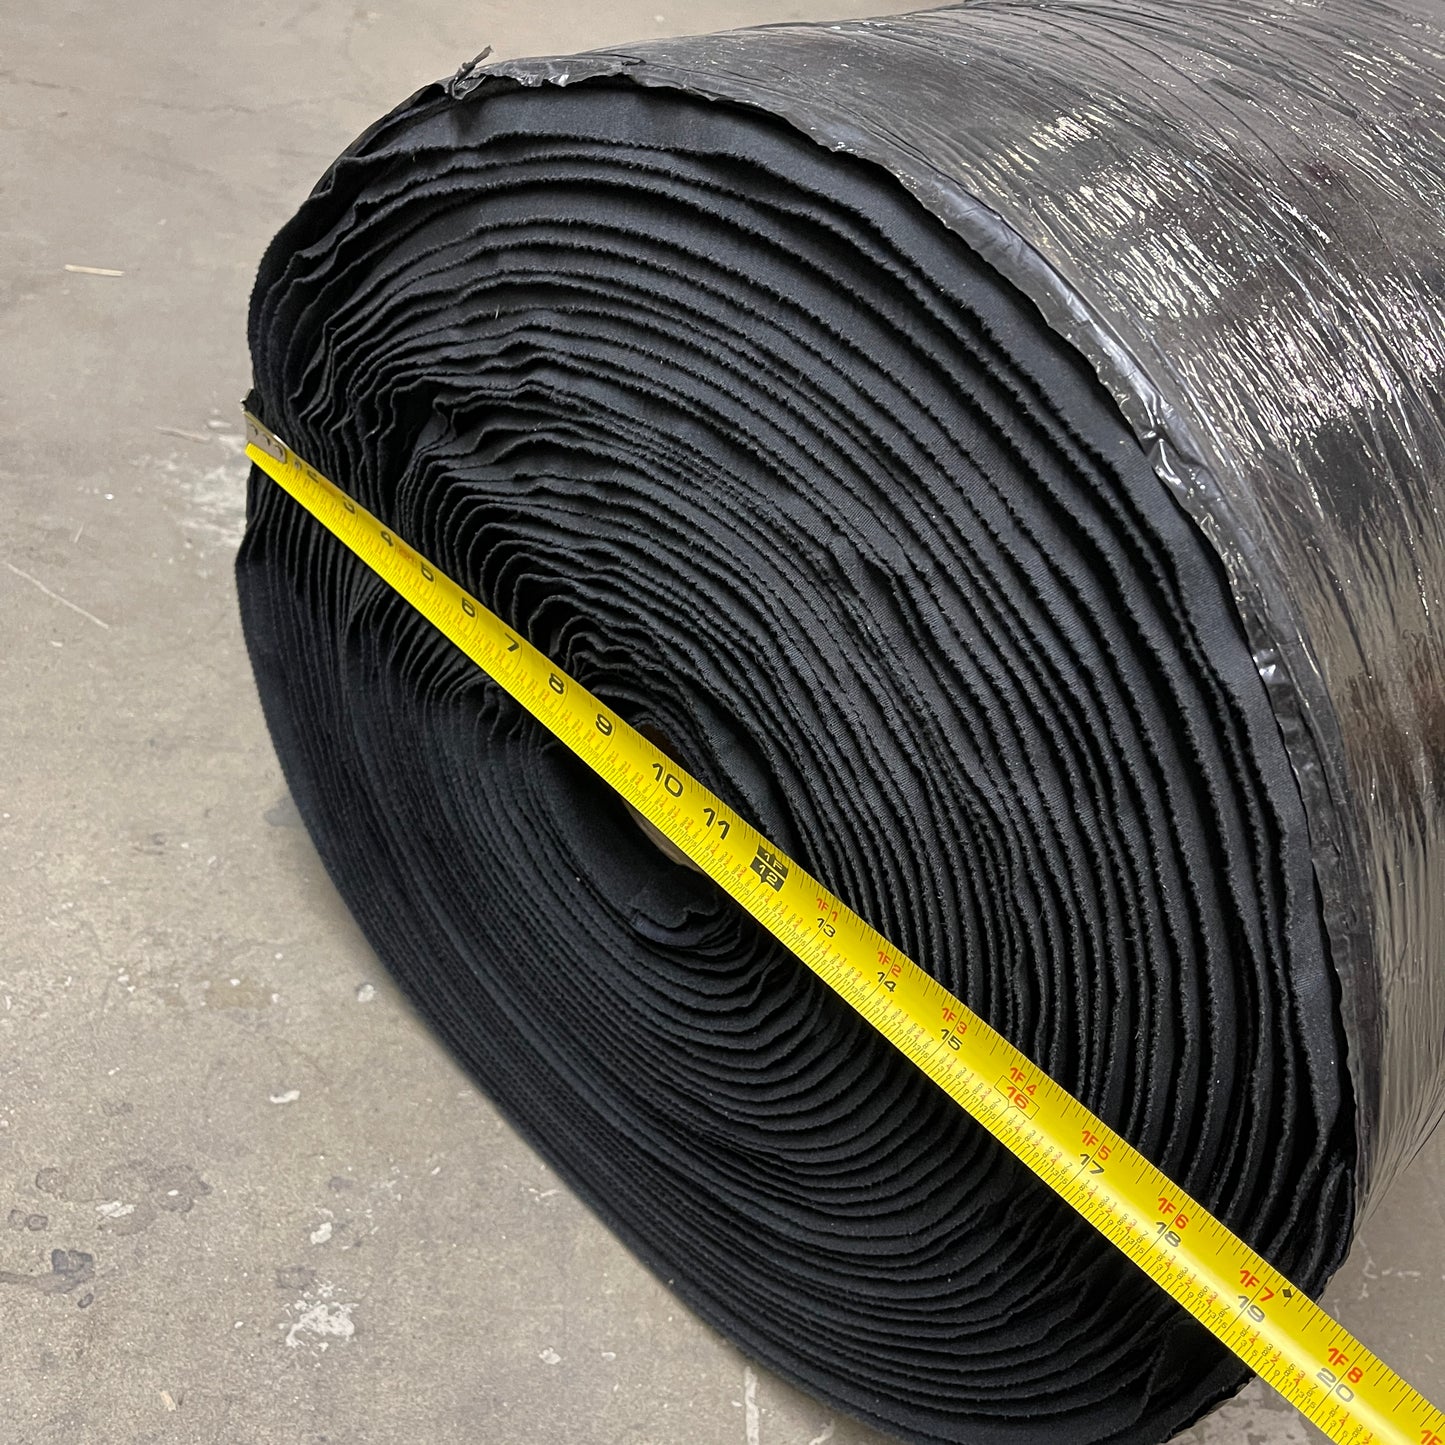 HYPUR-CEL Roll of Urethane Foam Black 190' x 60' x 100' S1005 (New)